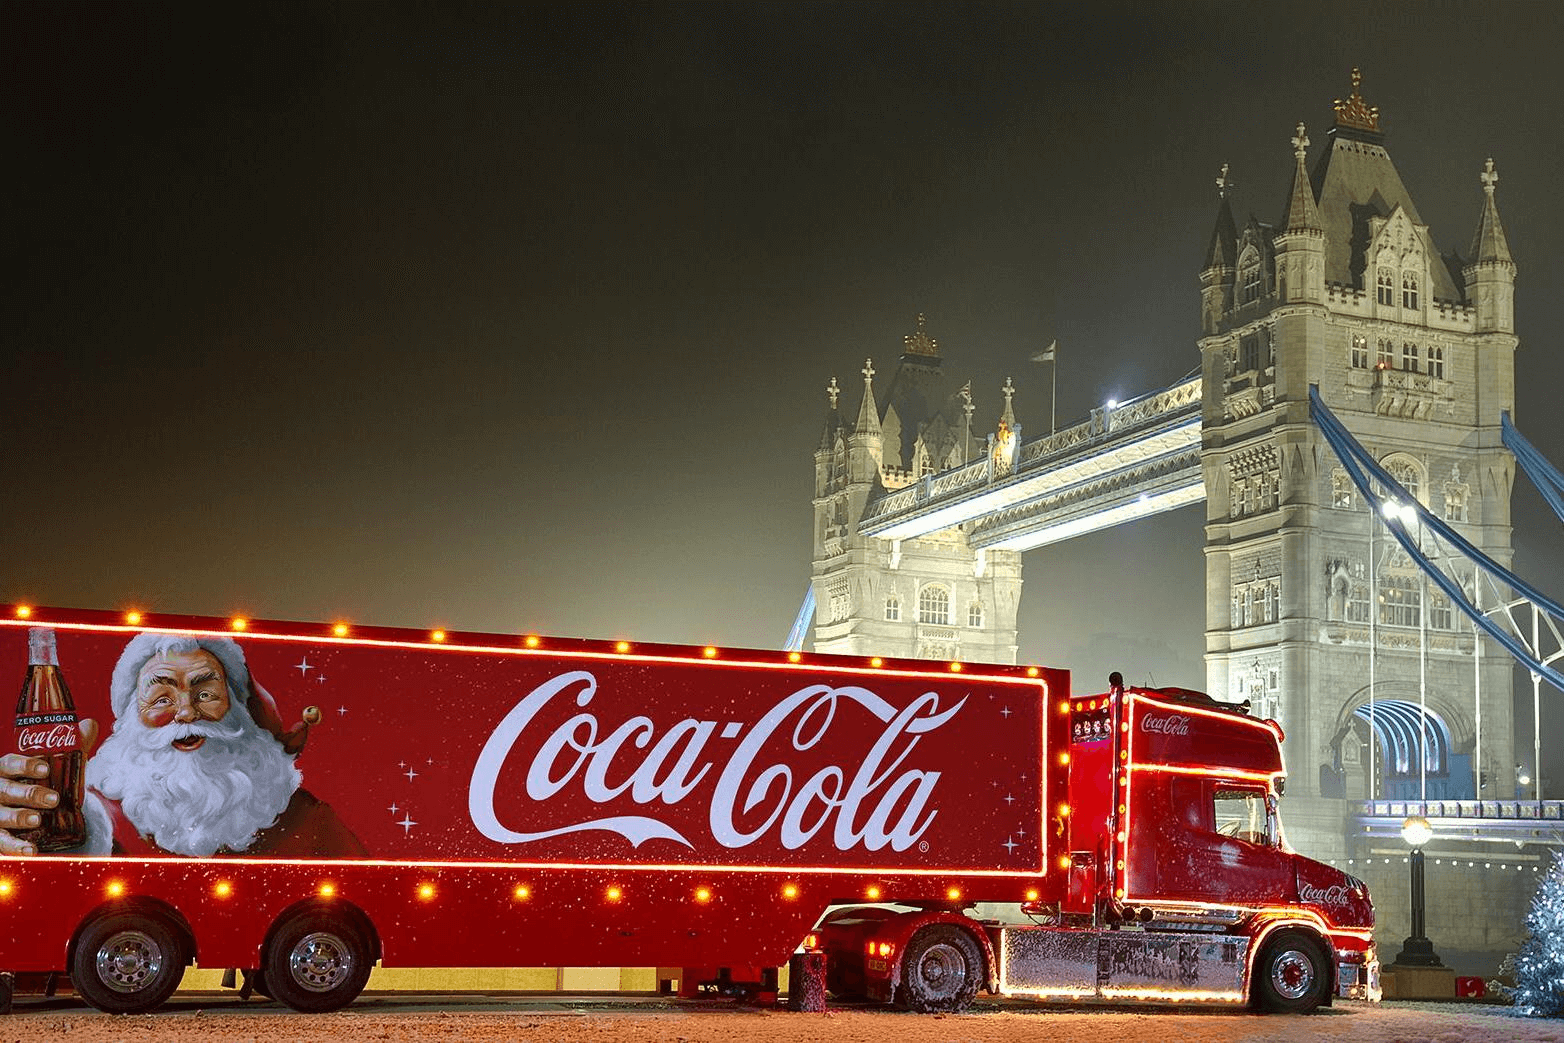 Coca-Cola-Truck mit Logo und Tower Bridge im Hintergrund – Lassen Sie sich von Branding-Experten wie Coca Cola – Bild inspirieren